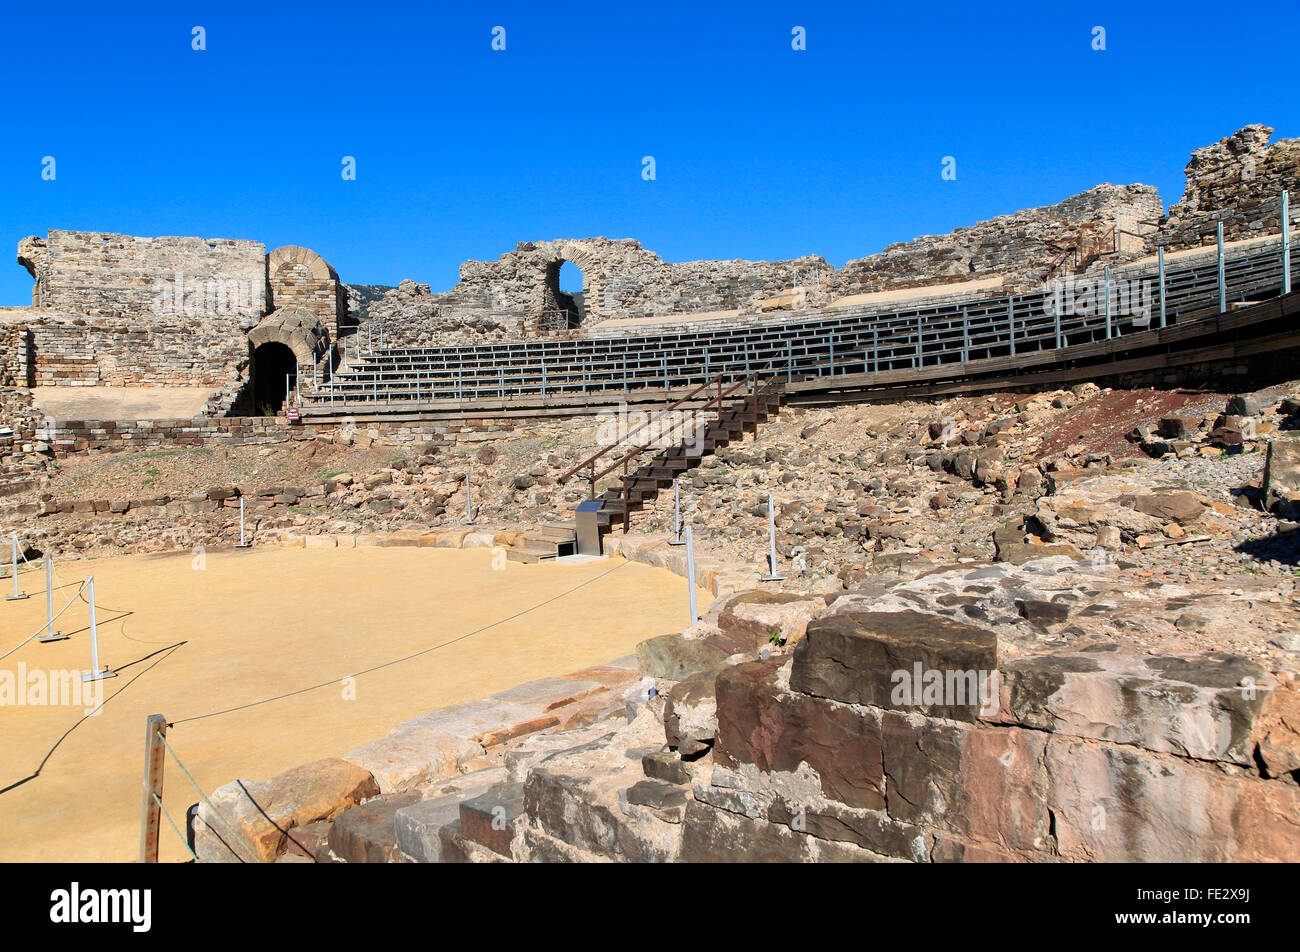 Amphithéâtre romain de Baelo Claudia, site romain de la province de Cadix, Espagne Banque D'Images